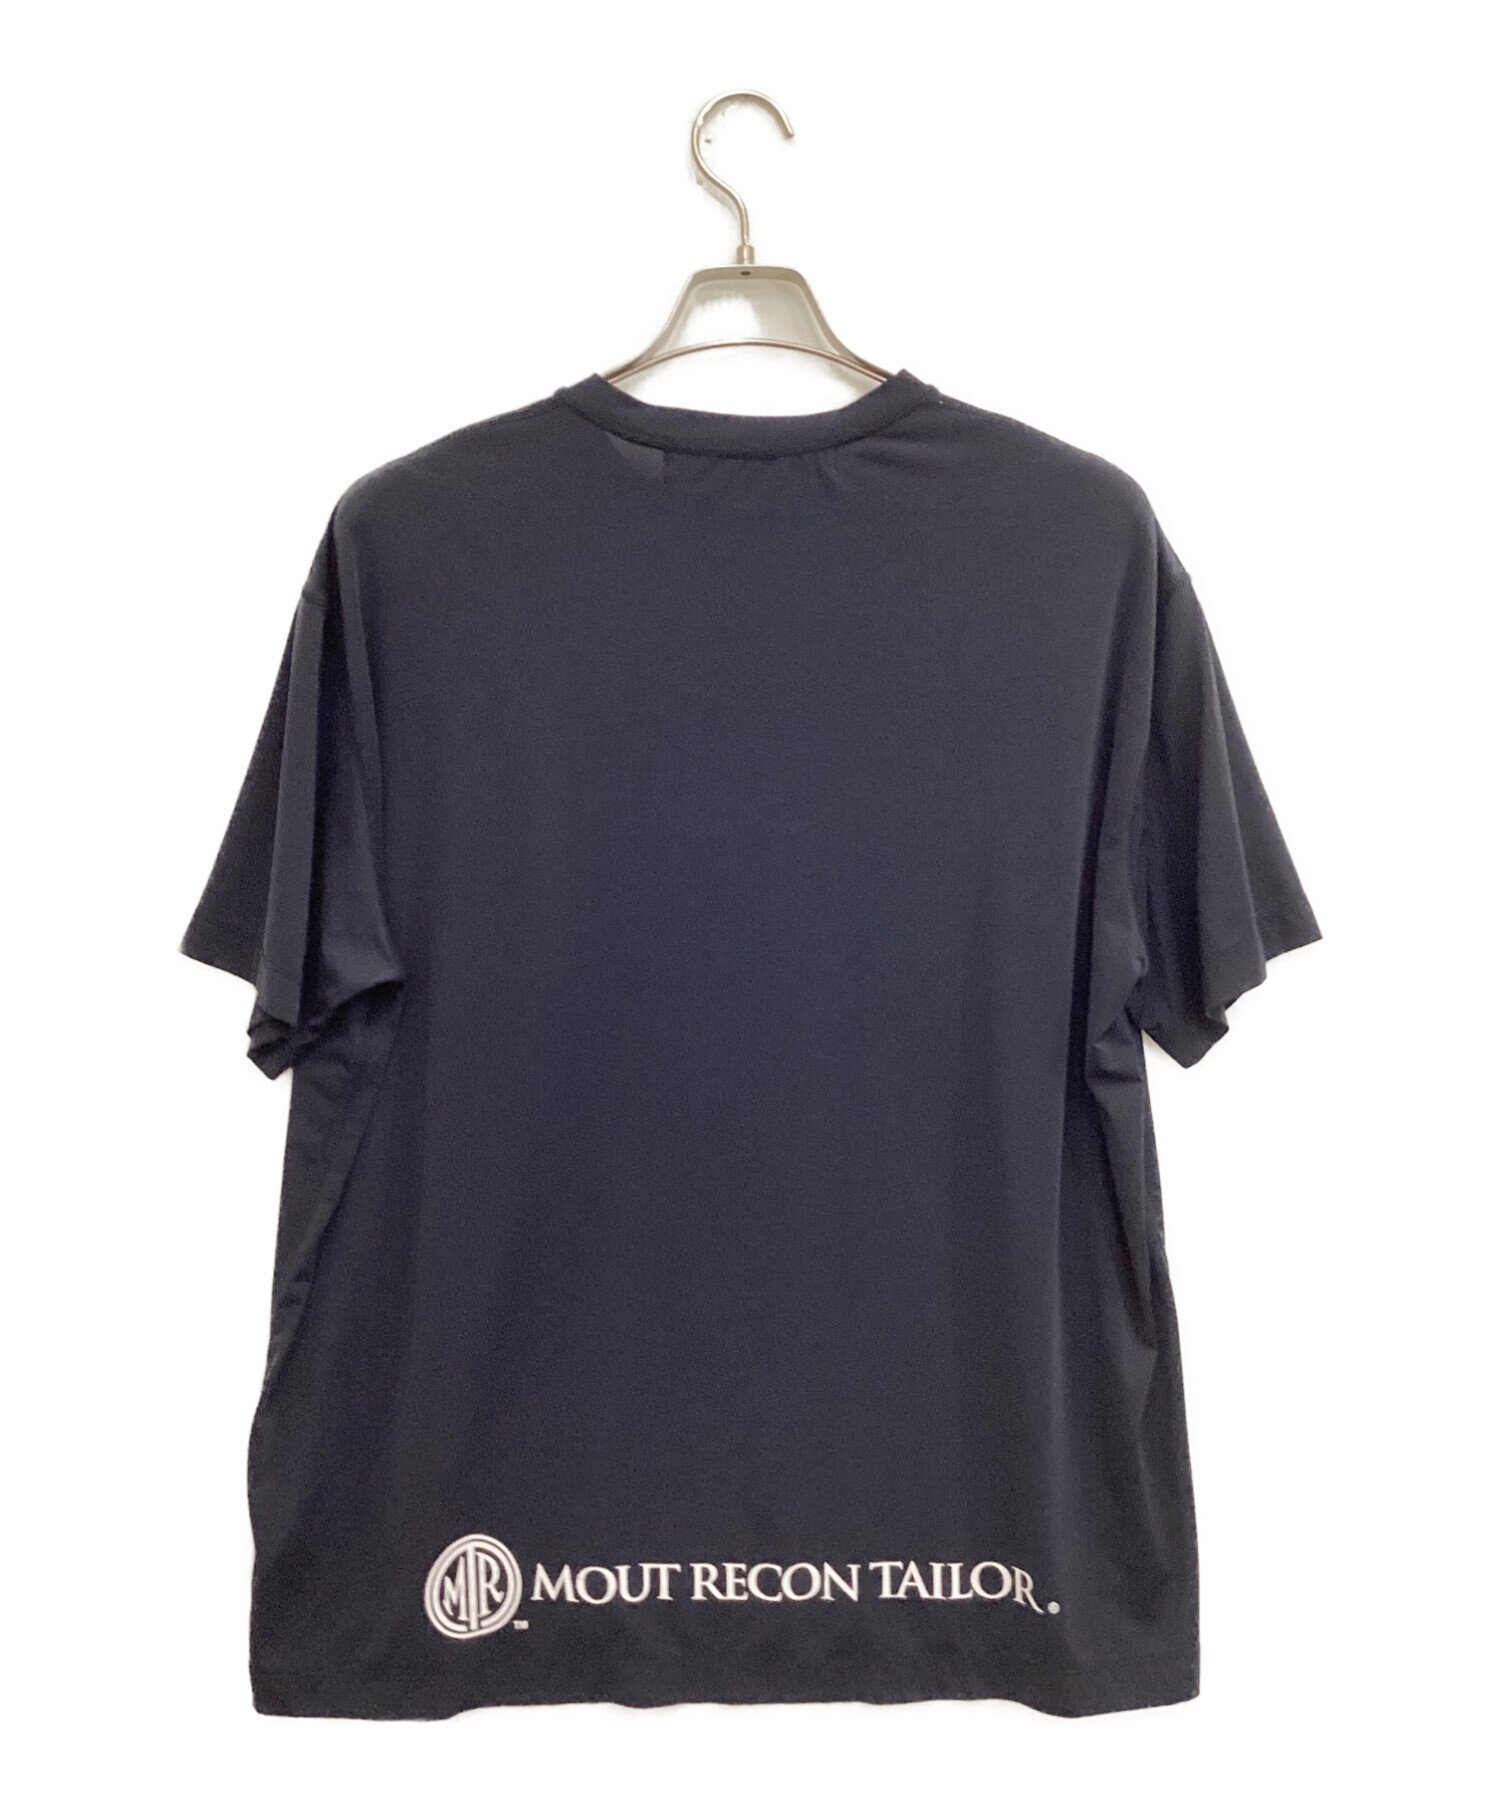 中古・古着通販】mout recon tailor (マウトリーコンテーラー) Tシャツ